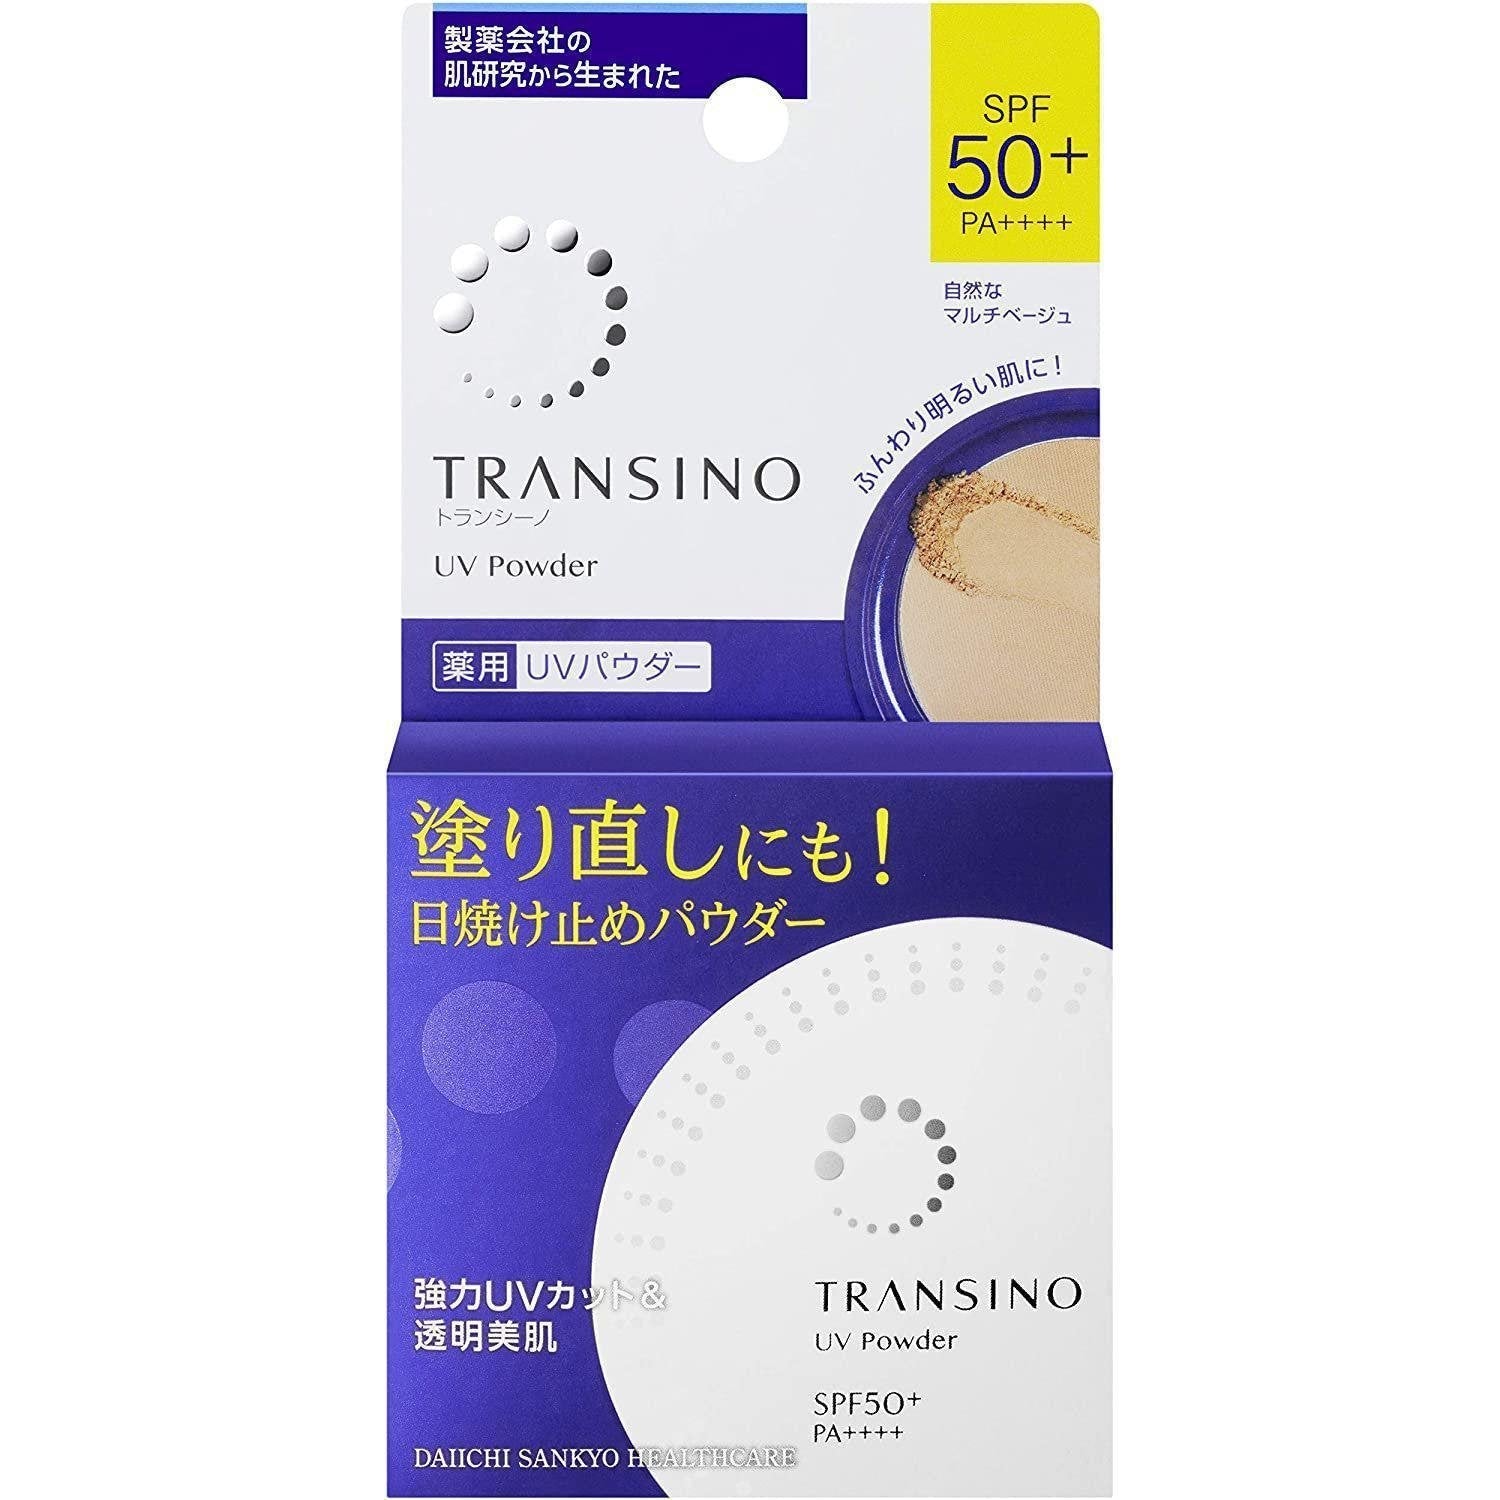 Transino UV Powder SPF50+ PA++++ 12g